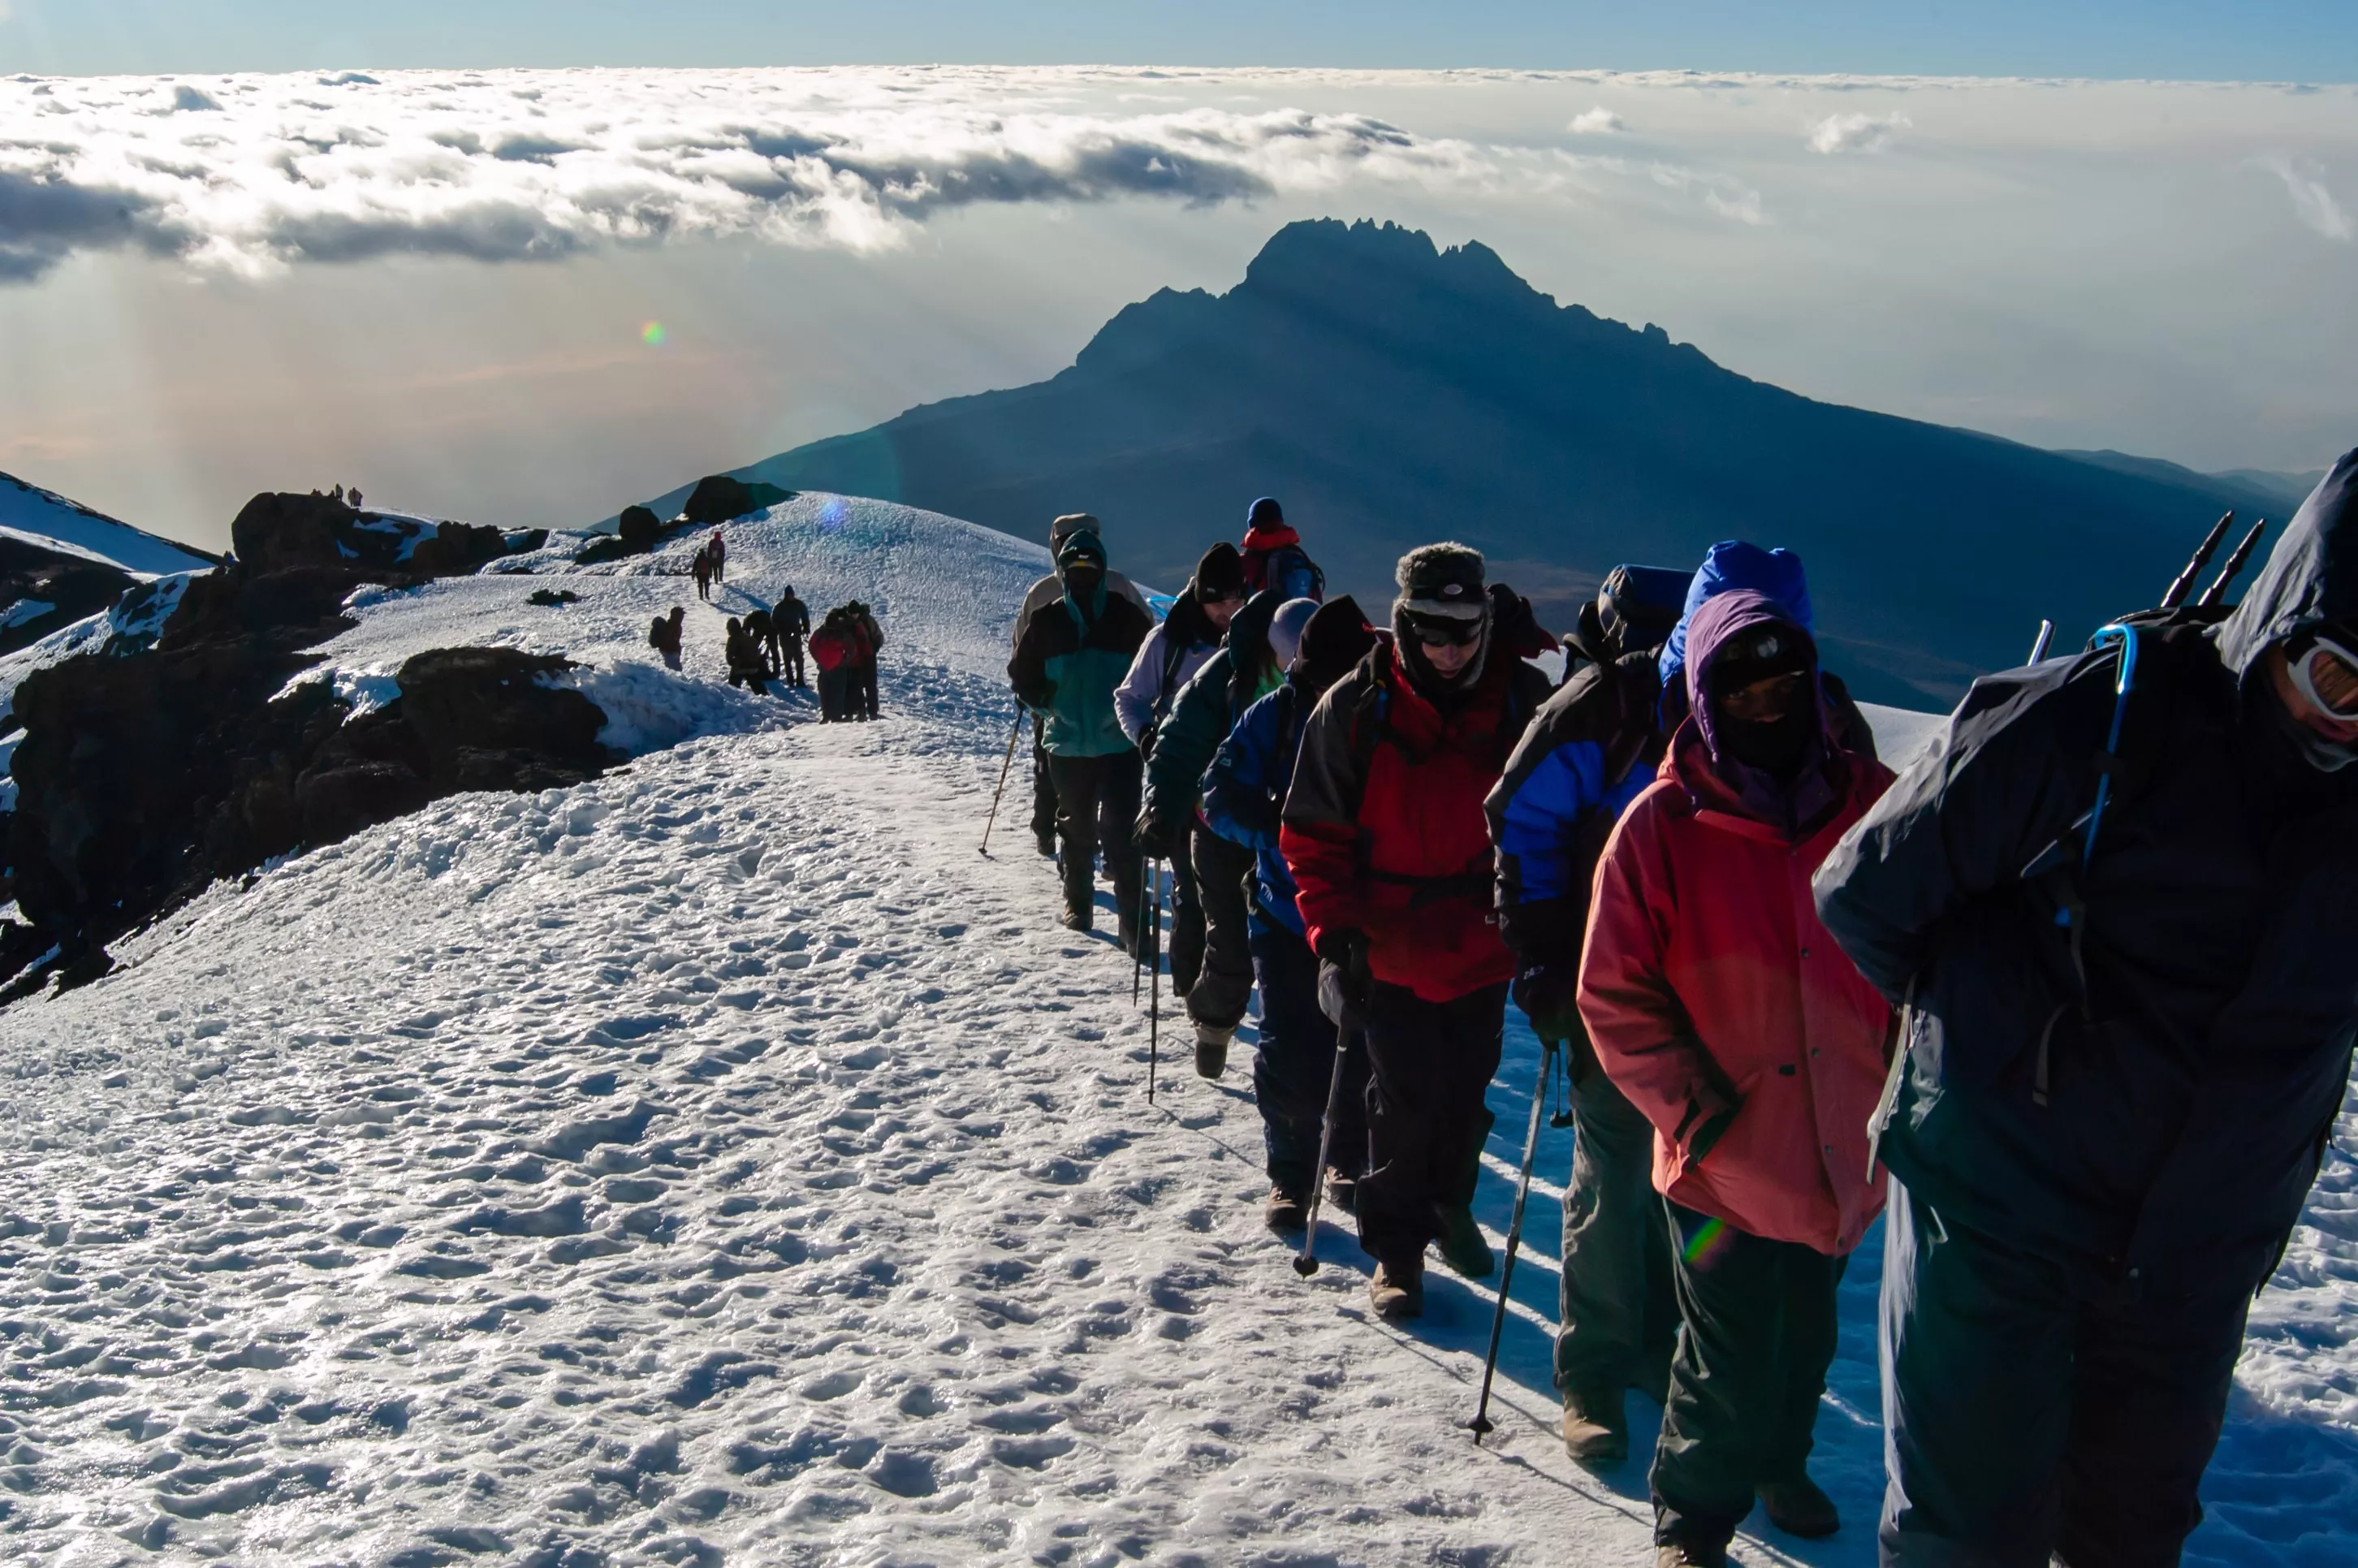 Снаряжение для восхождения на Килиманджаро (5895м)